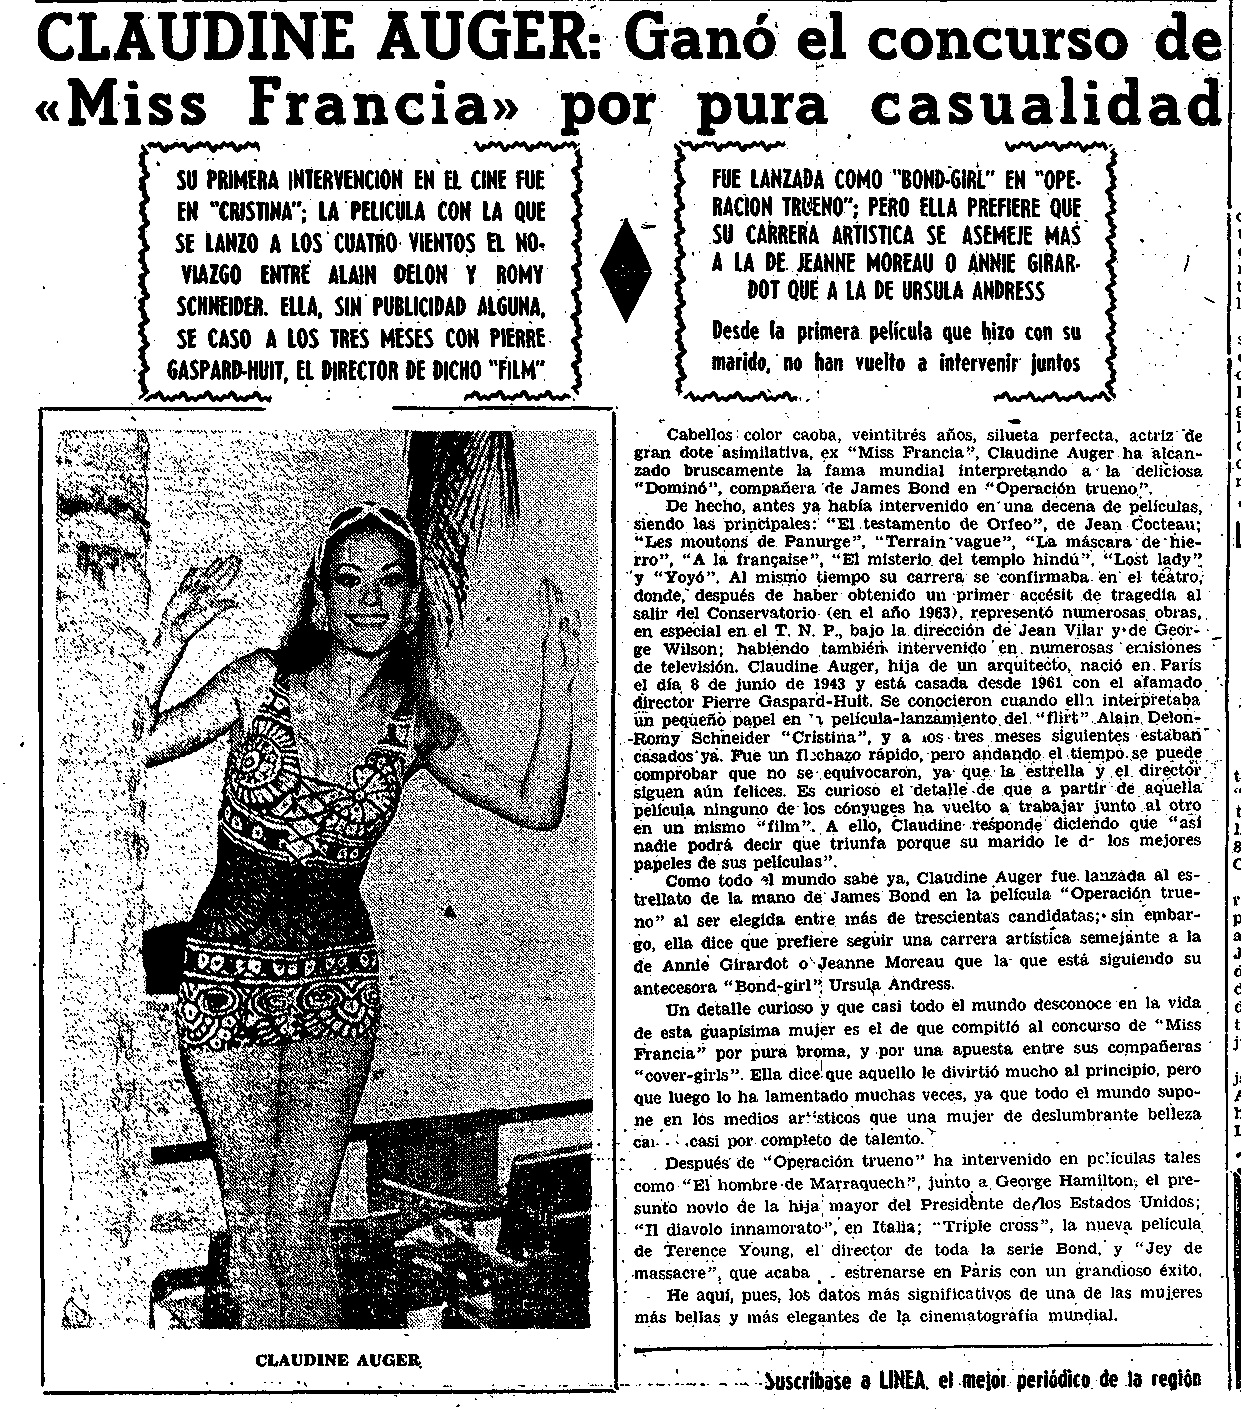 04 1967 02 23 Linea Murcia 14 Claudine Auger